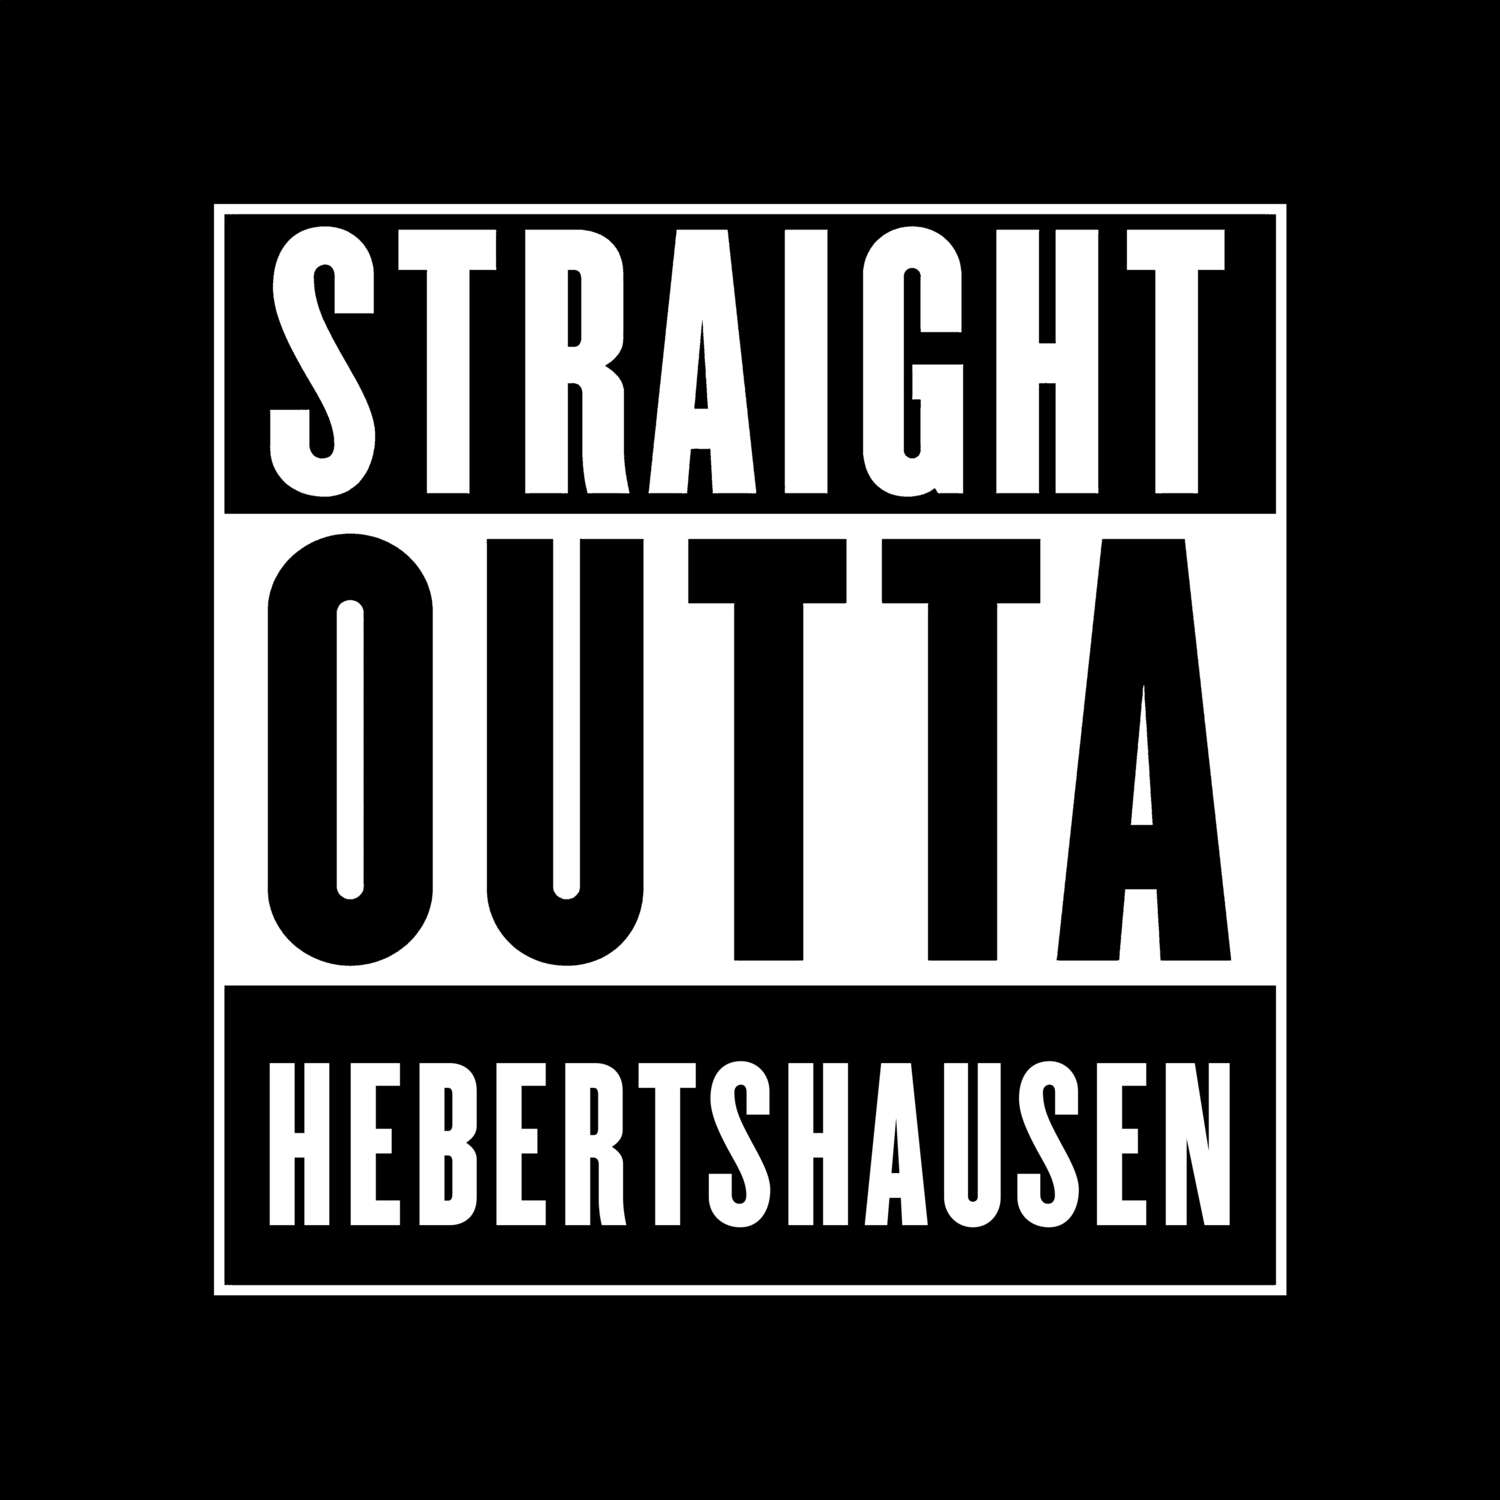 Hebertshausen T-Shirt »Straight Outta«